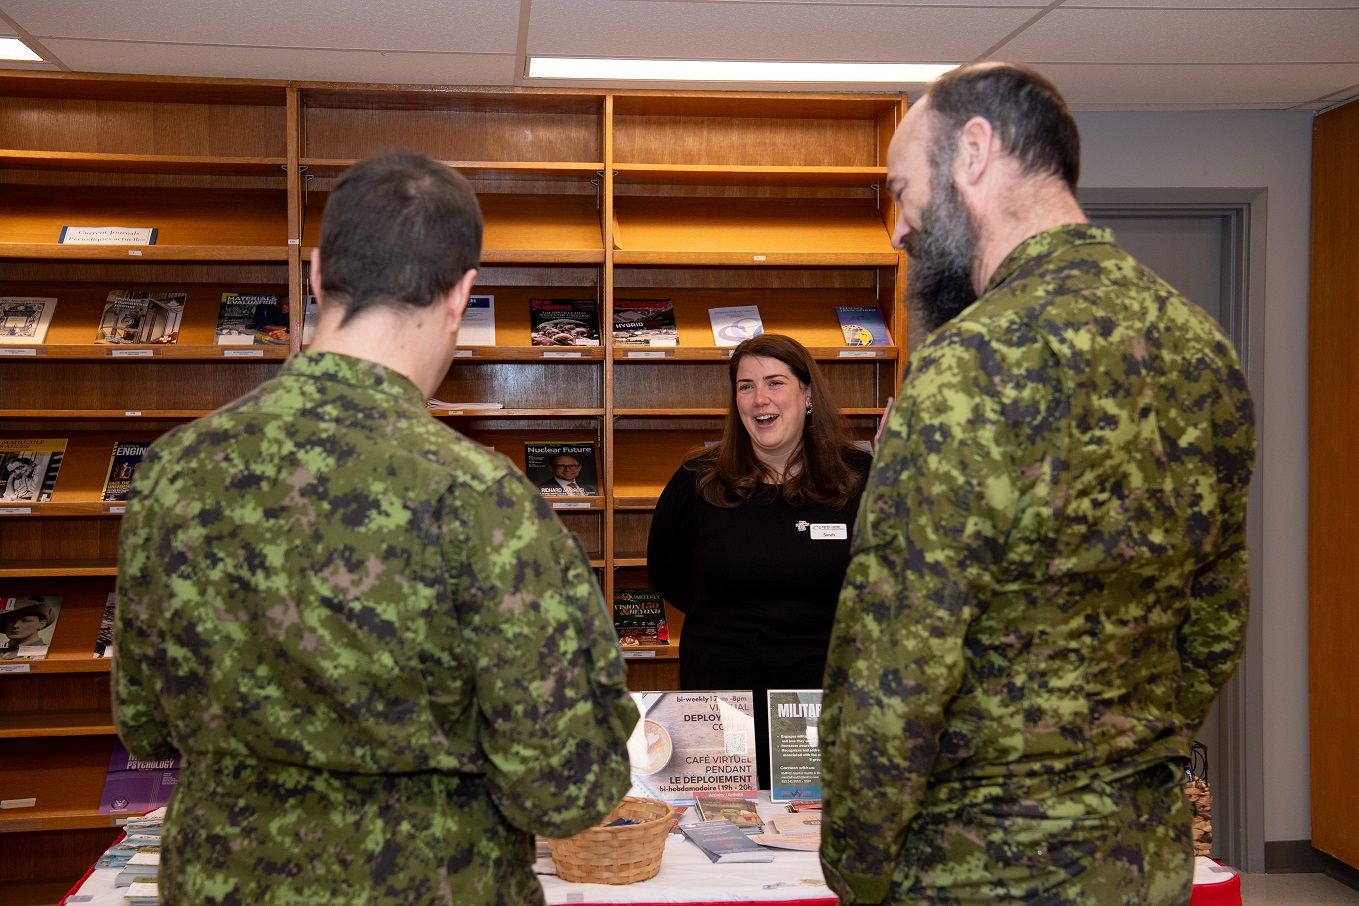 Un membre du personnel parle à deux membres des Forces canadiennes des services offerts au CRFMK